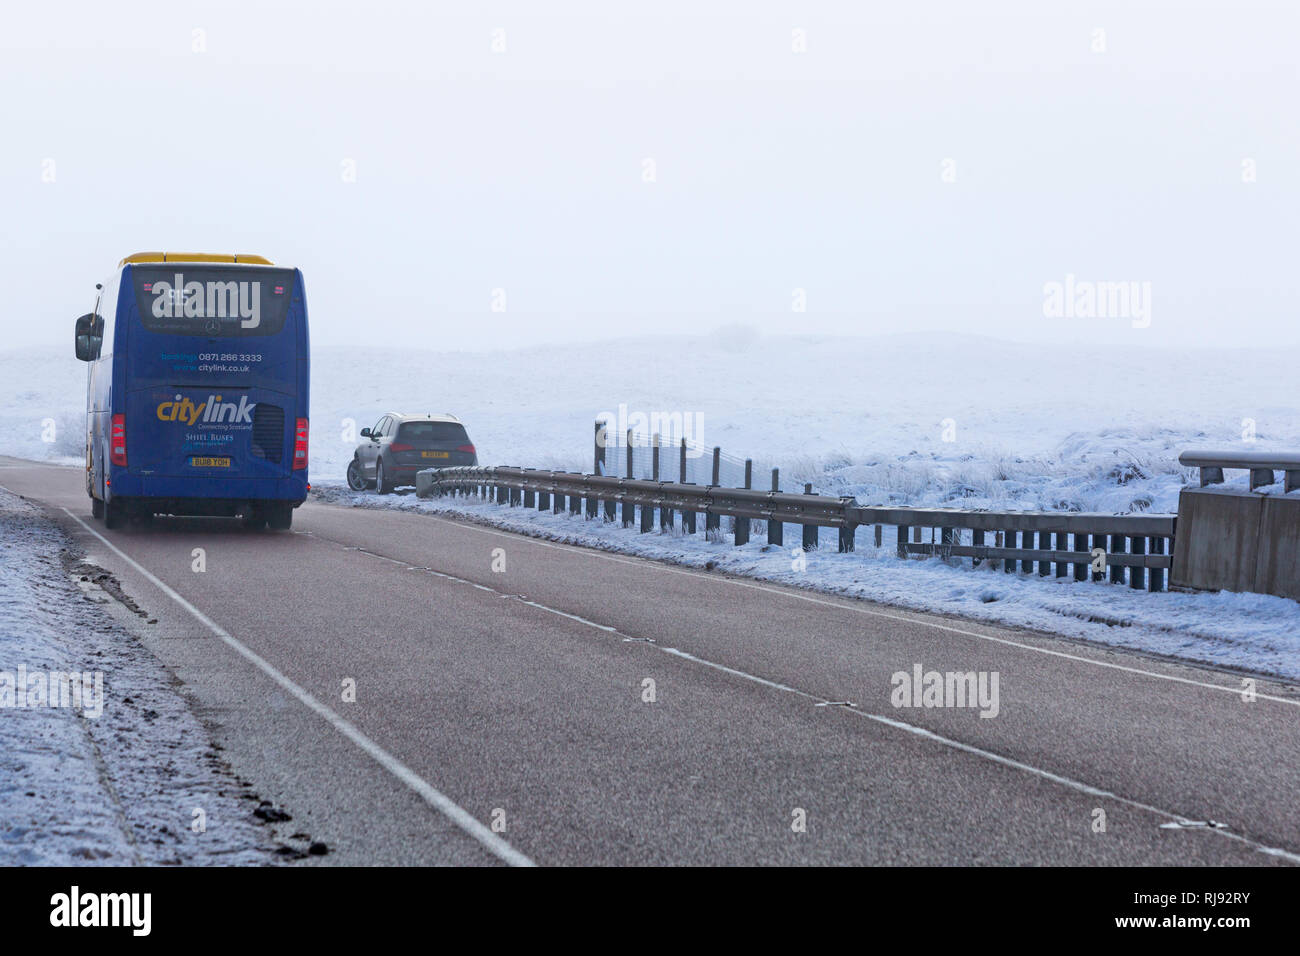 Scottish citylink Trainer 915 Fahrzeug entlang der A82 Straße am Tag der Winter mit Schnee um an Rannoch Moor, Highlands, Schottland im Winter Stockfoto